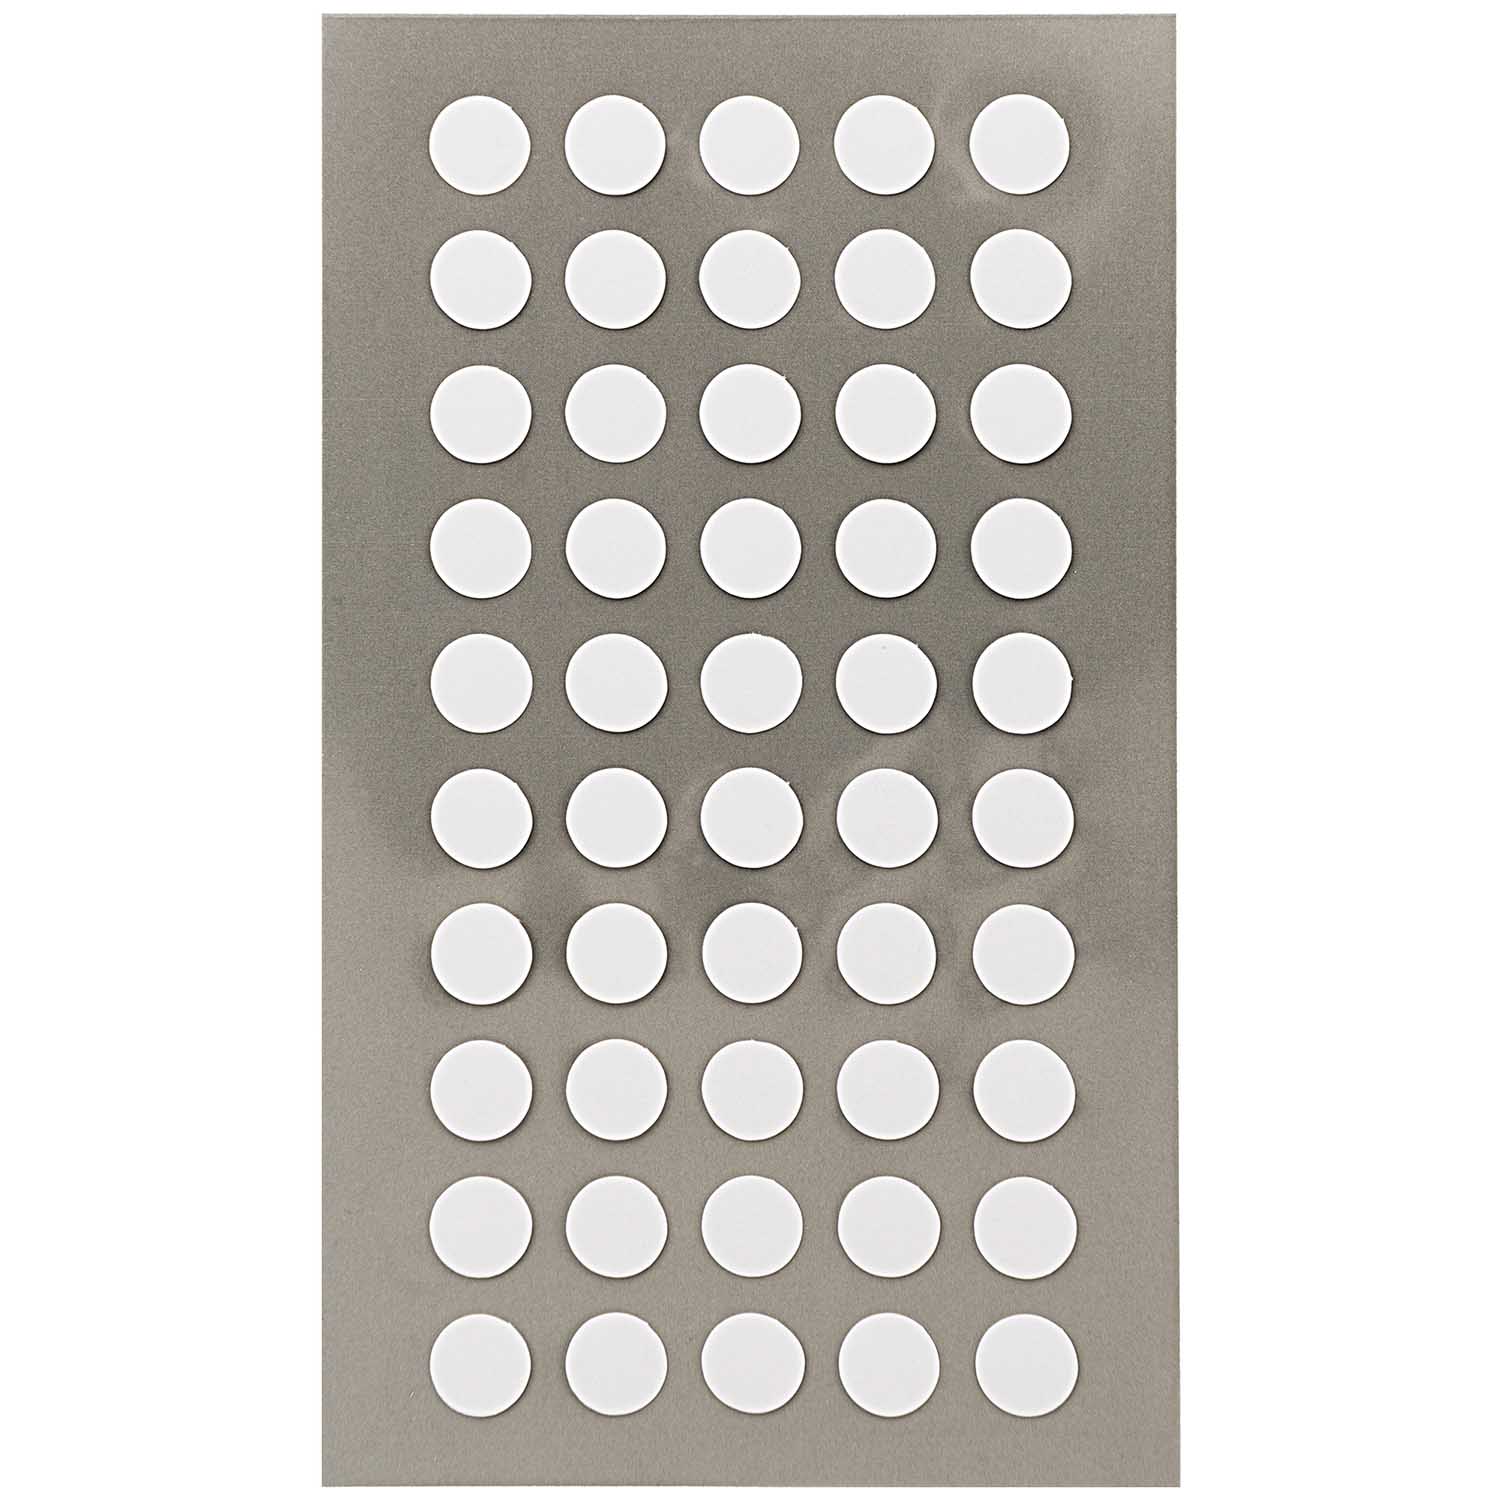 NEU Office Sticker, weiße Punkte, 8 mm, 4 Blatt